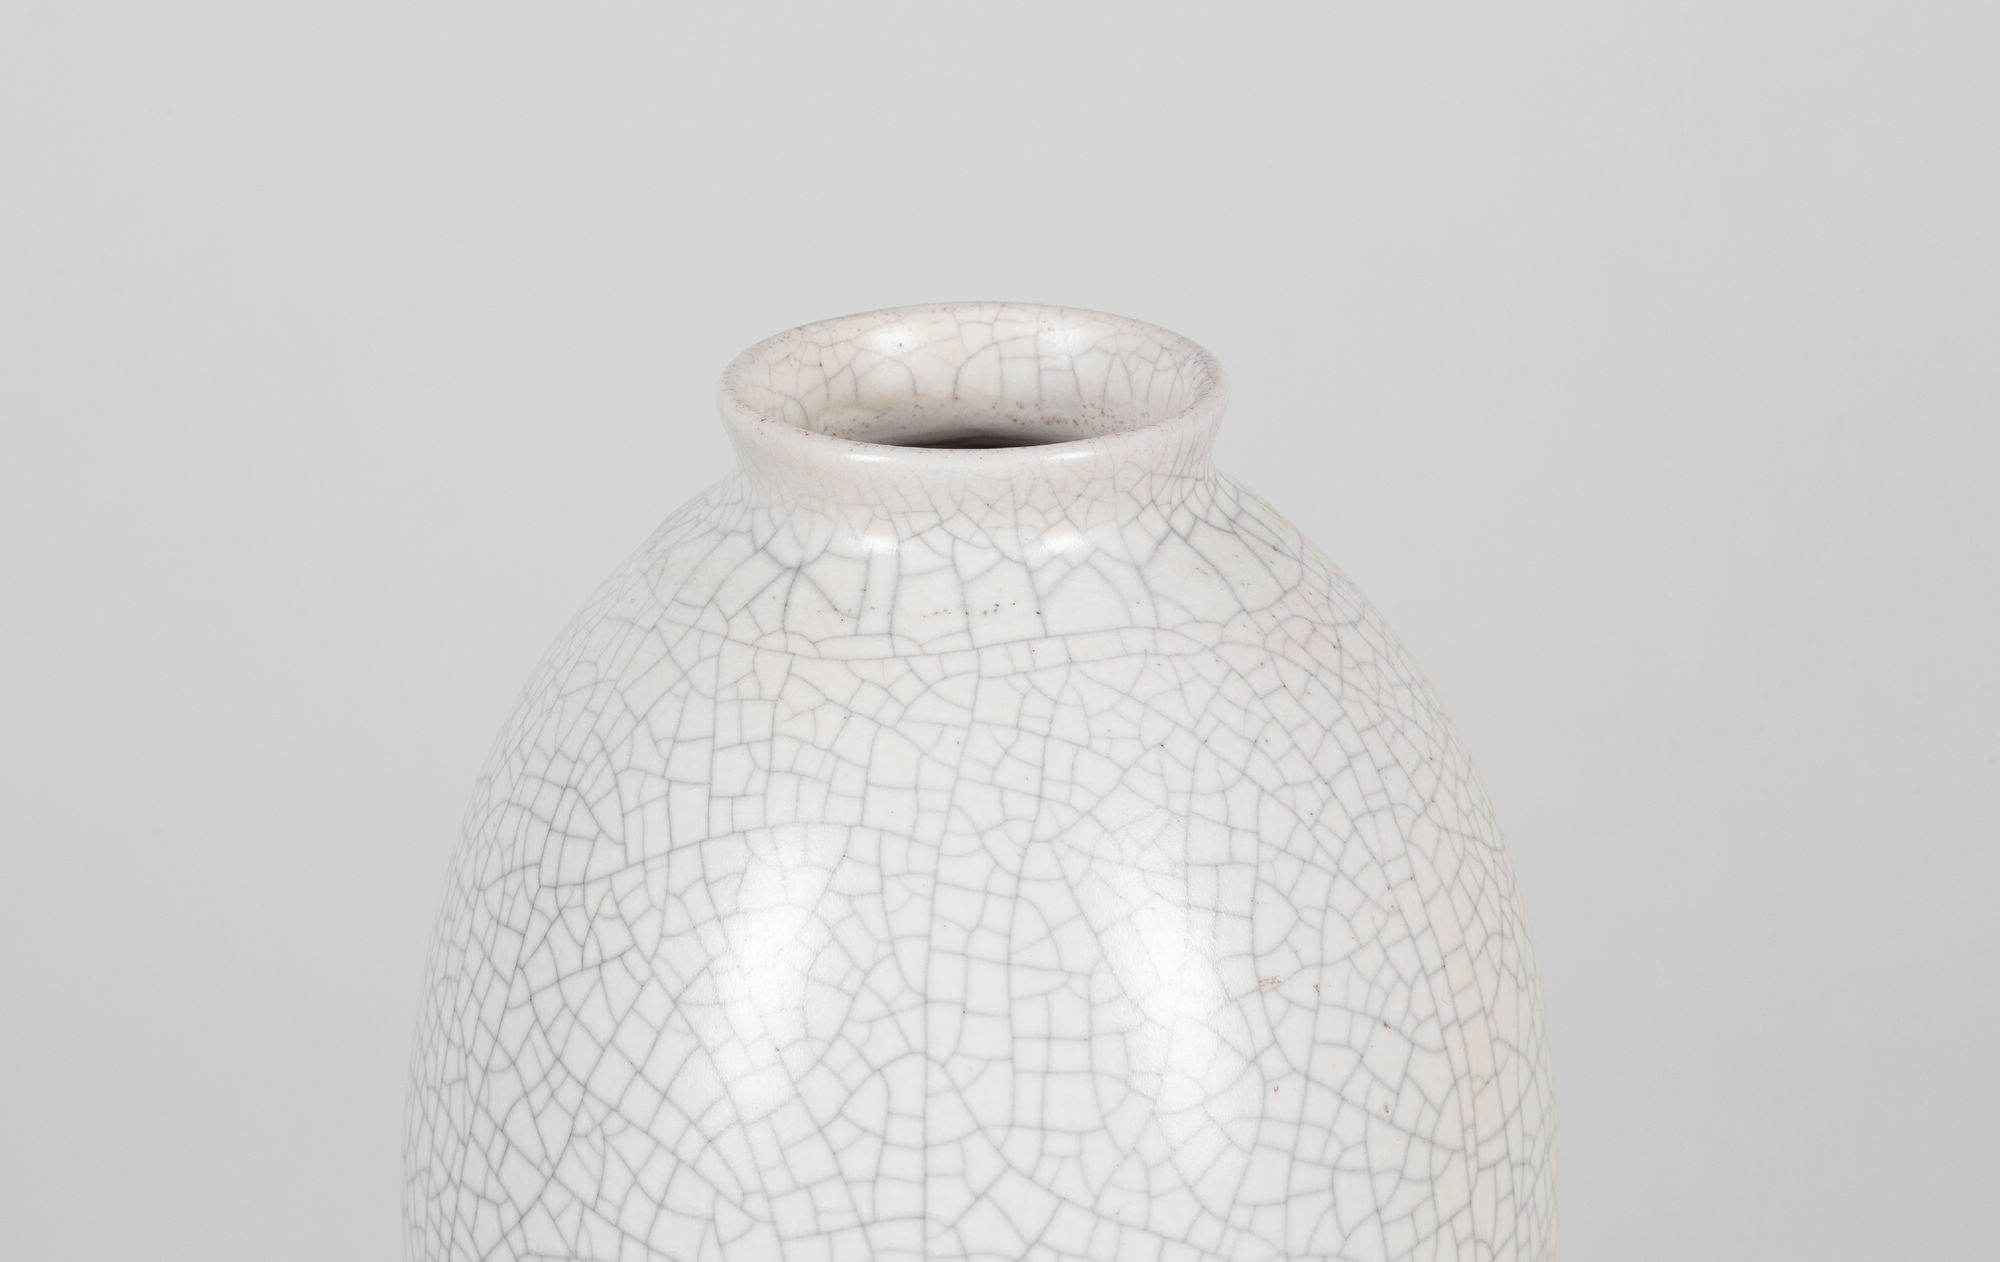  Fritz Haussmann Ceramic vase